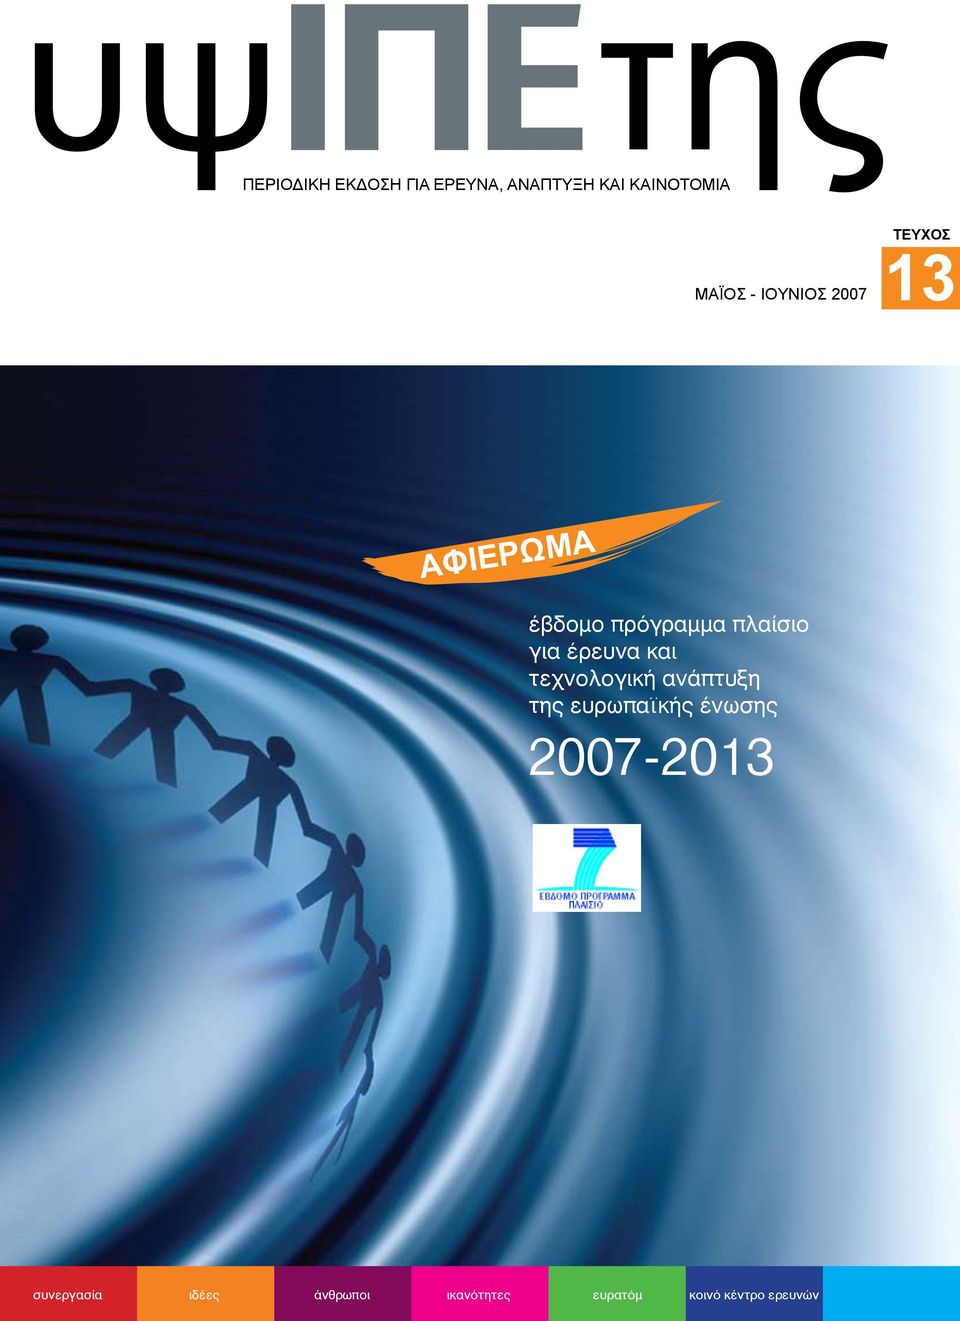 έρευνα και τεχνολογική ανάπτυξη της ευρωπαϊκής ένωσης 2007-2013